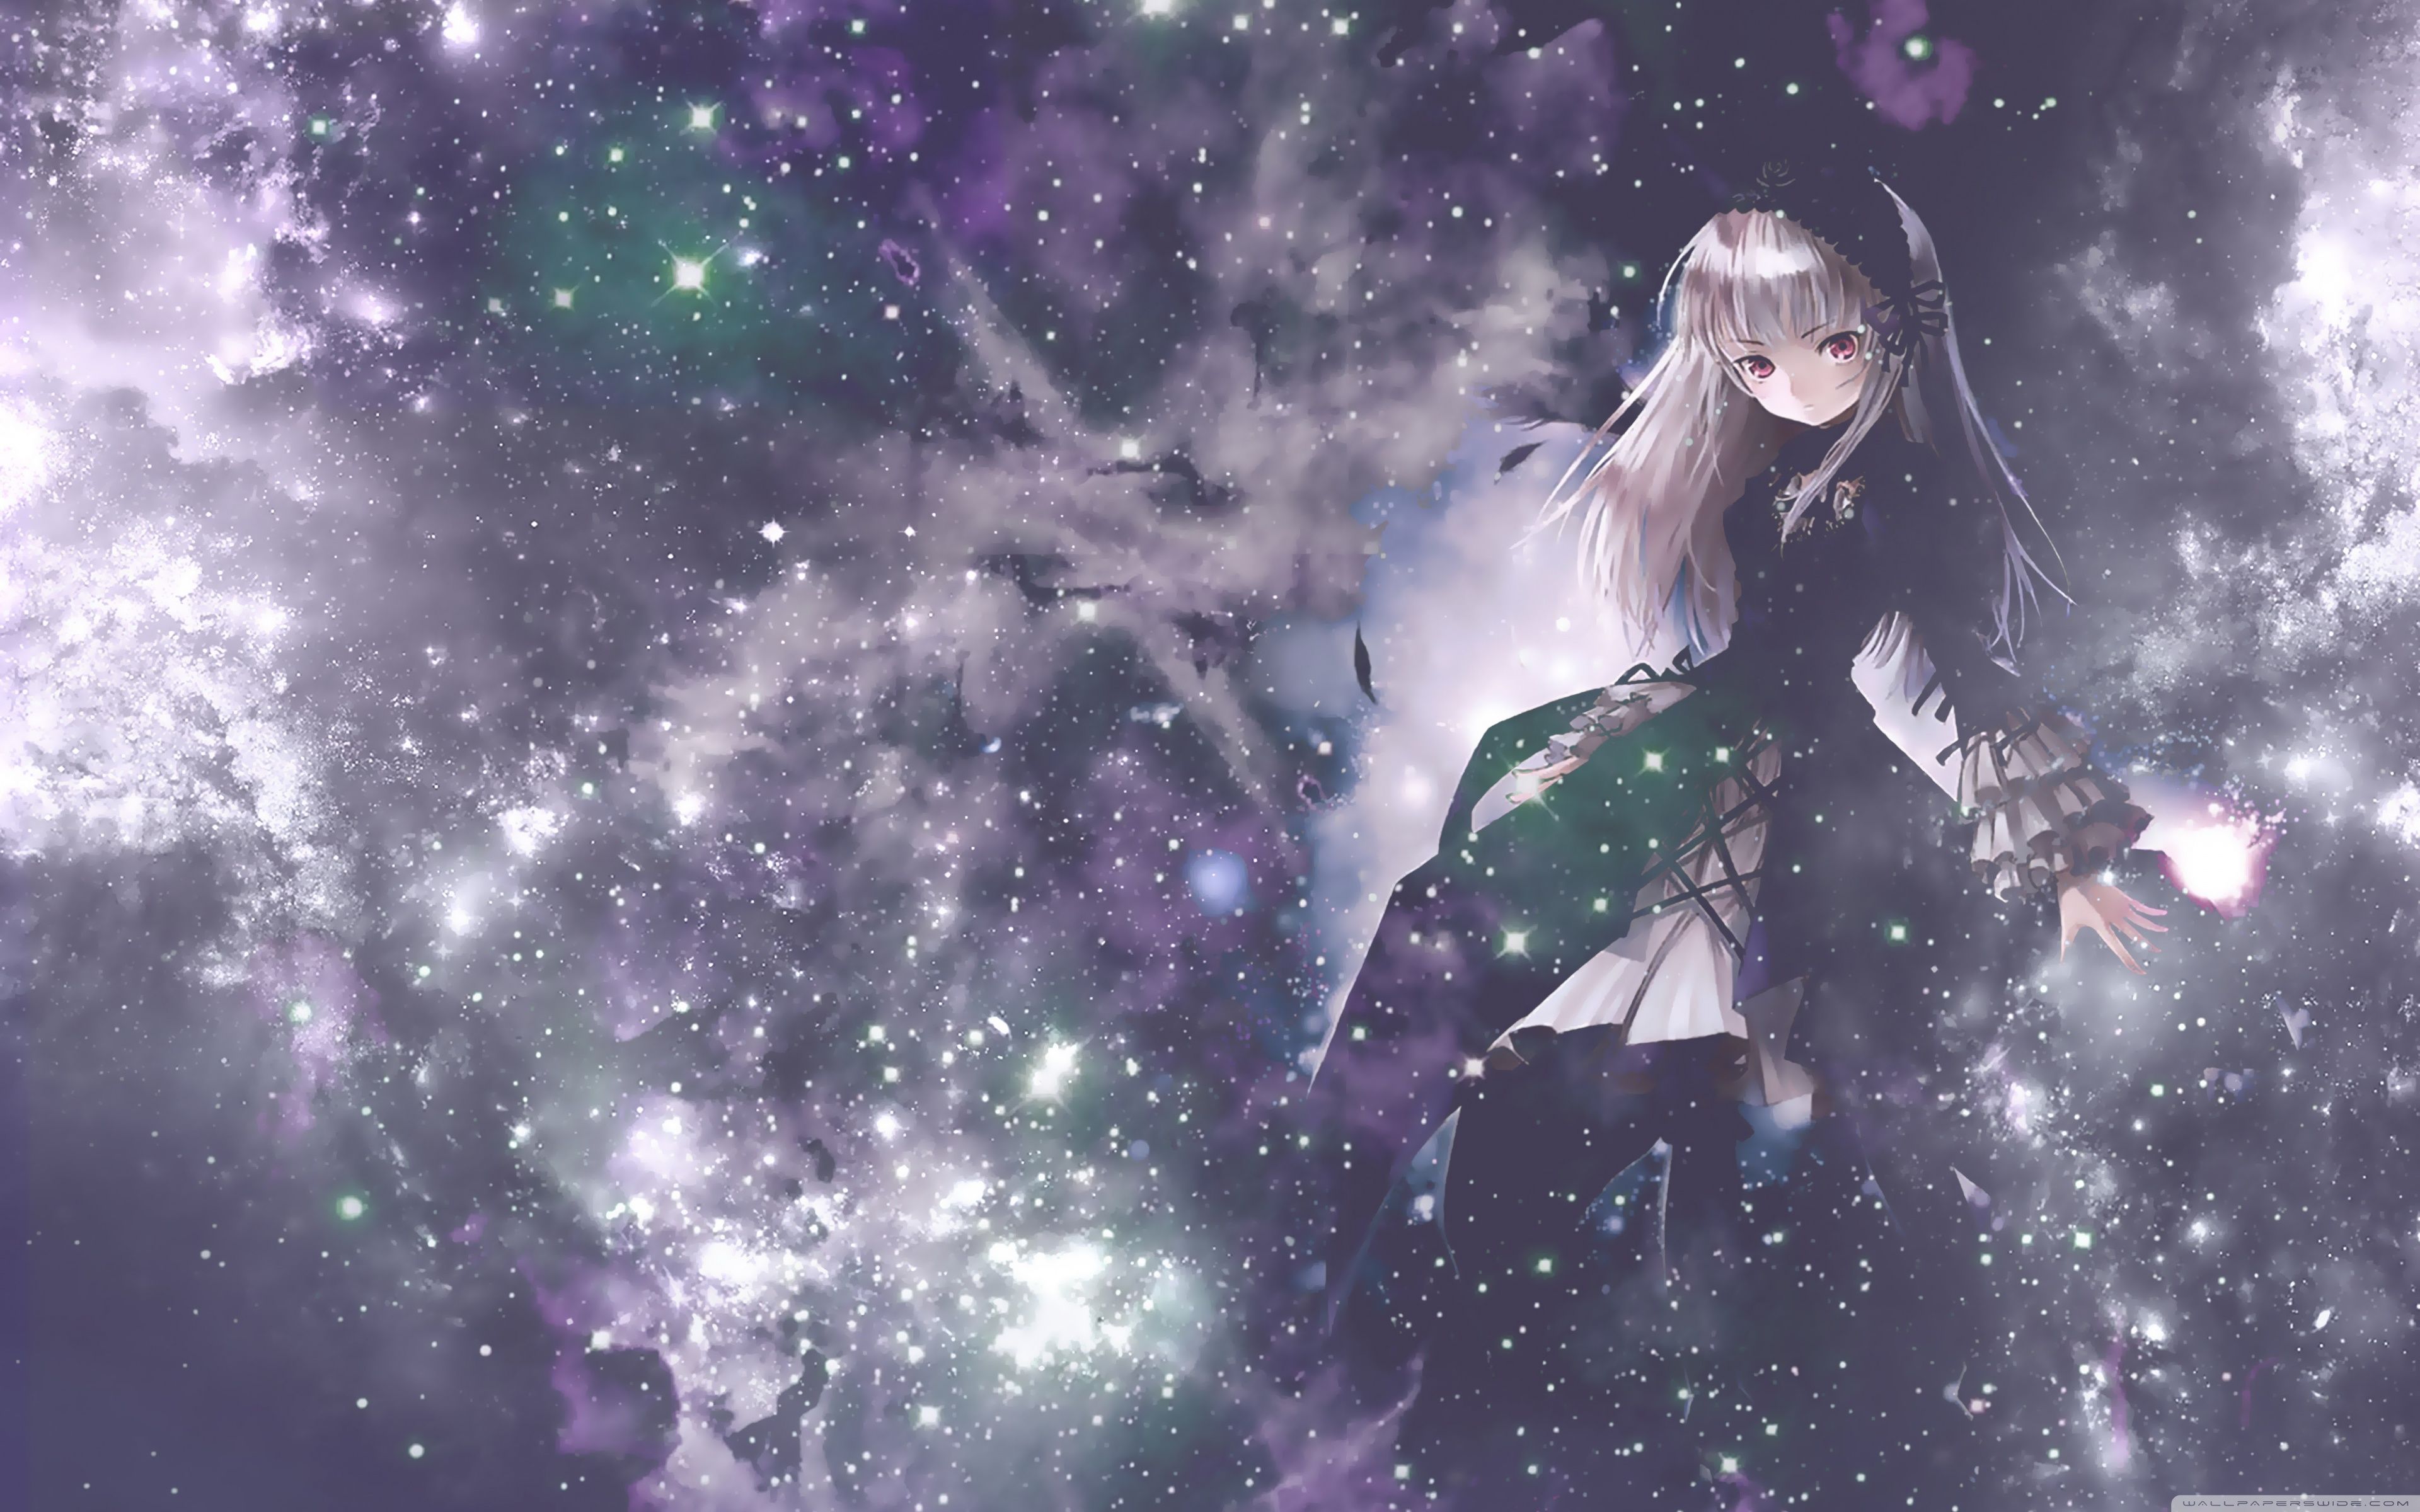 Thế giới vô tận của các sao chổi và hành tinh đầy màu sắc, đó là gì? Hãy xem hình ảnh về một cô gái Anime trên nền đen với một thiên hà đầy màu sắc ở phía sau. Hãy cùng bay vào không gian vô tận và khám phá những điều tuyệt diệu của vũ trụ!